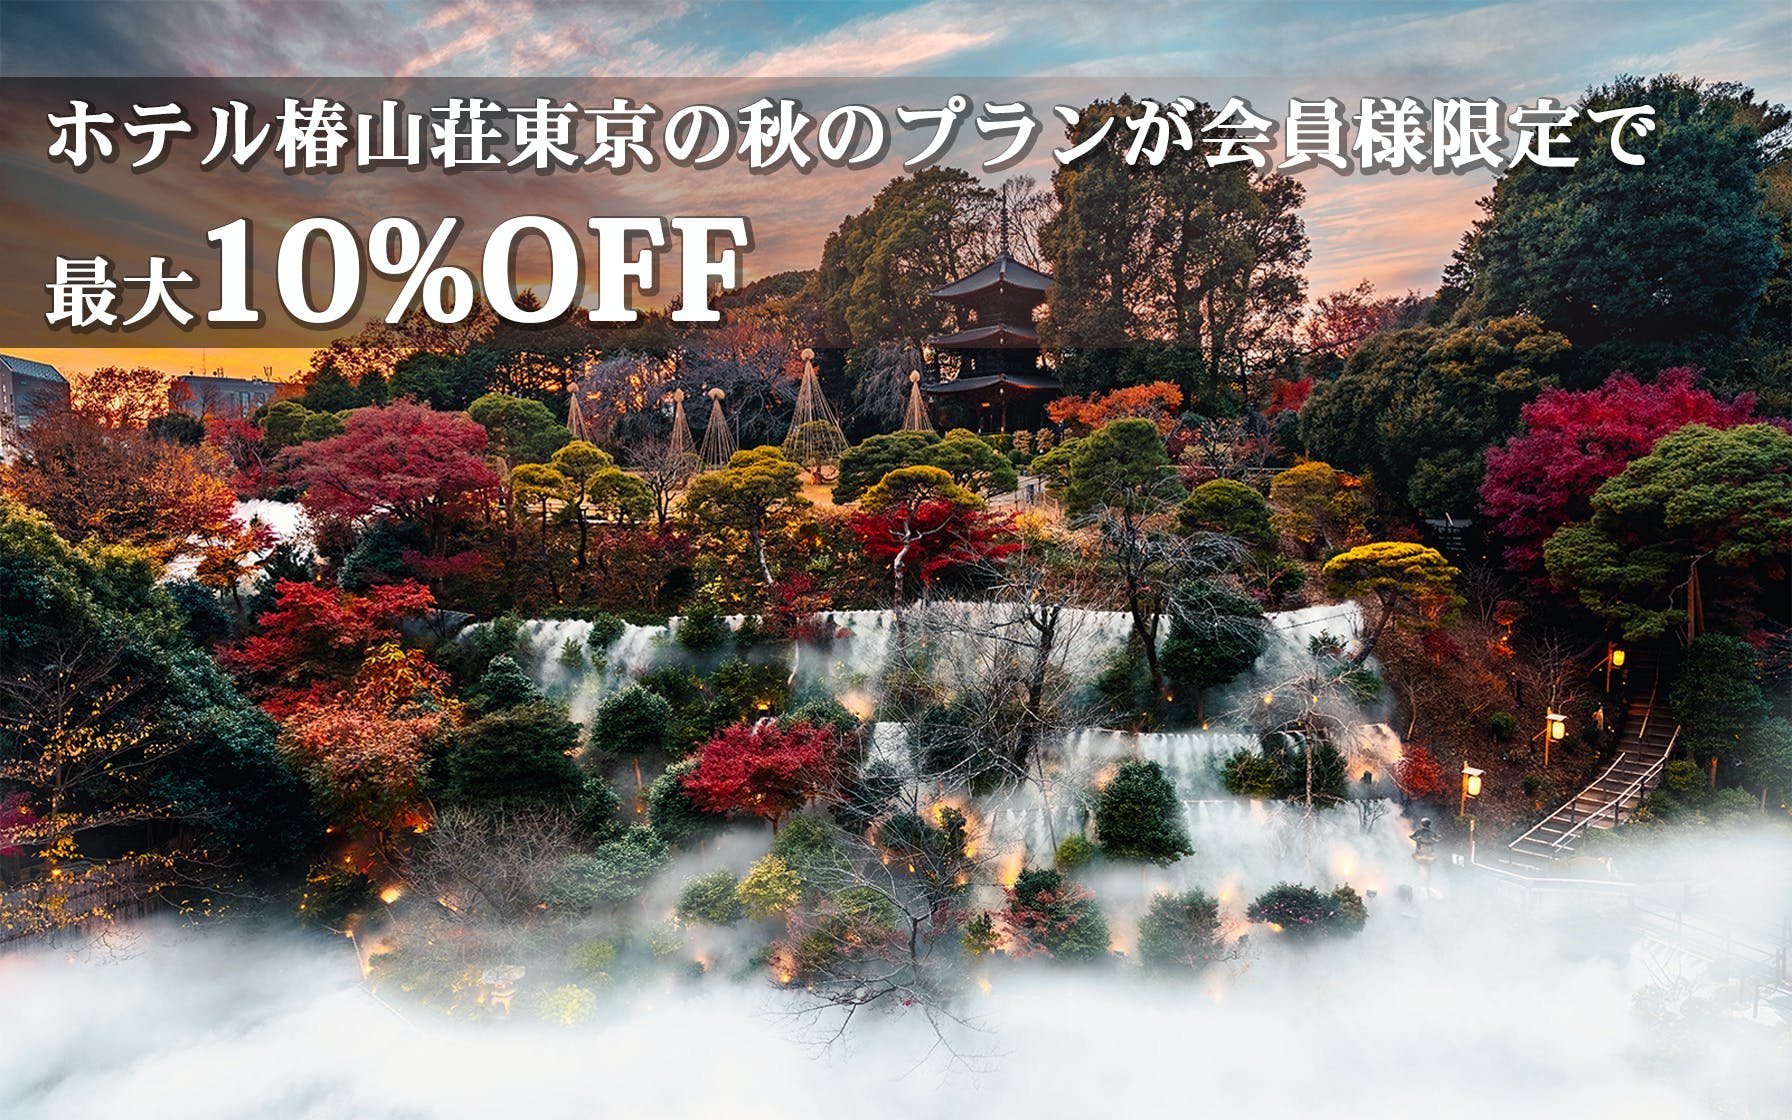 ホテル椿山荘東京の秋のプランが会員様限定で最大10%オフ